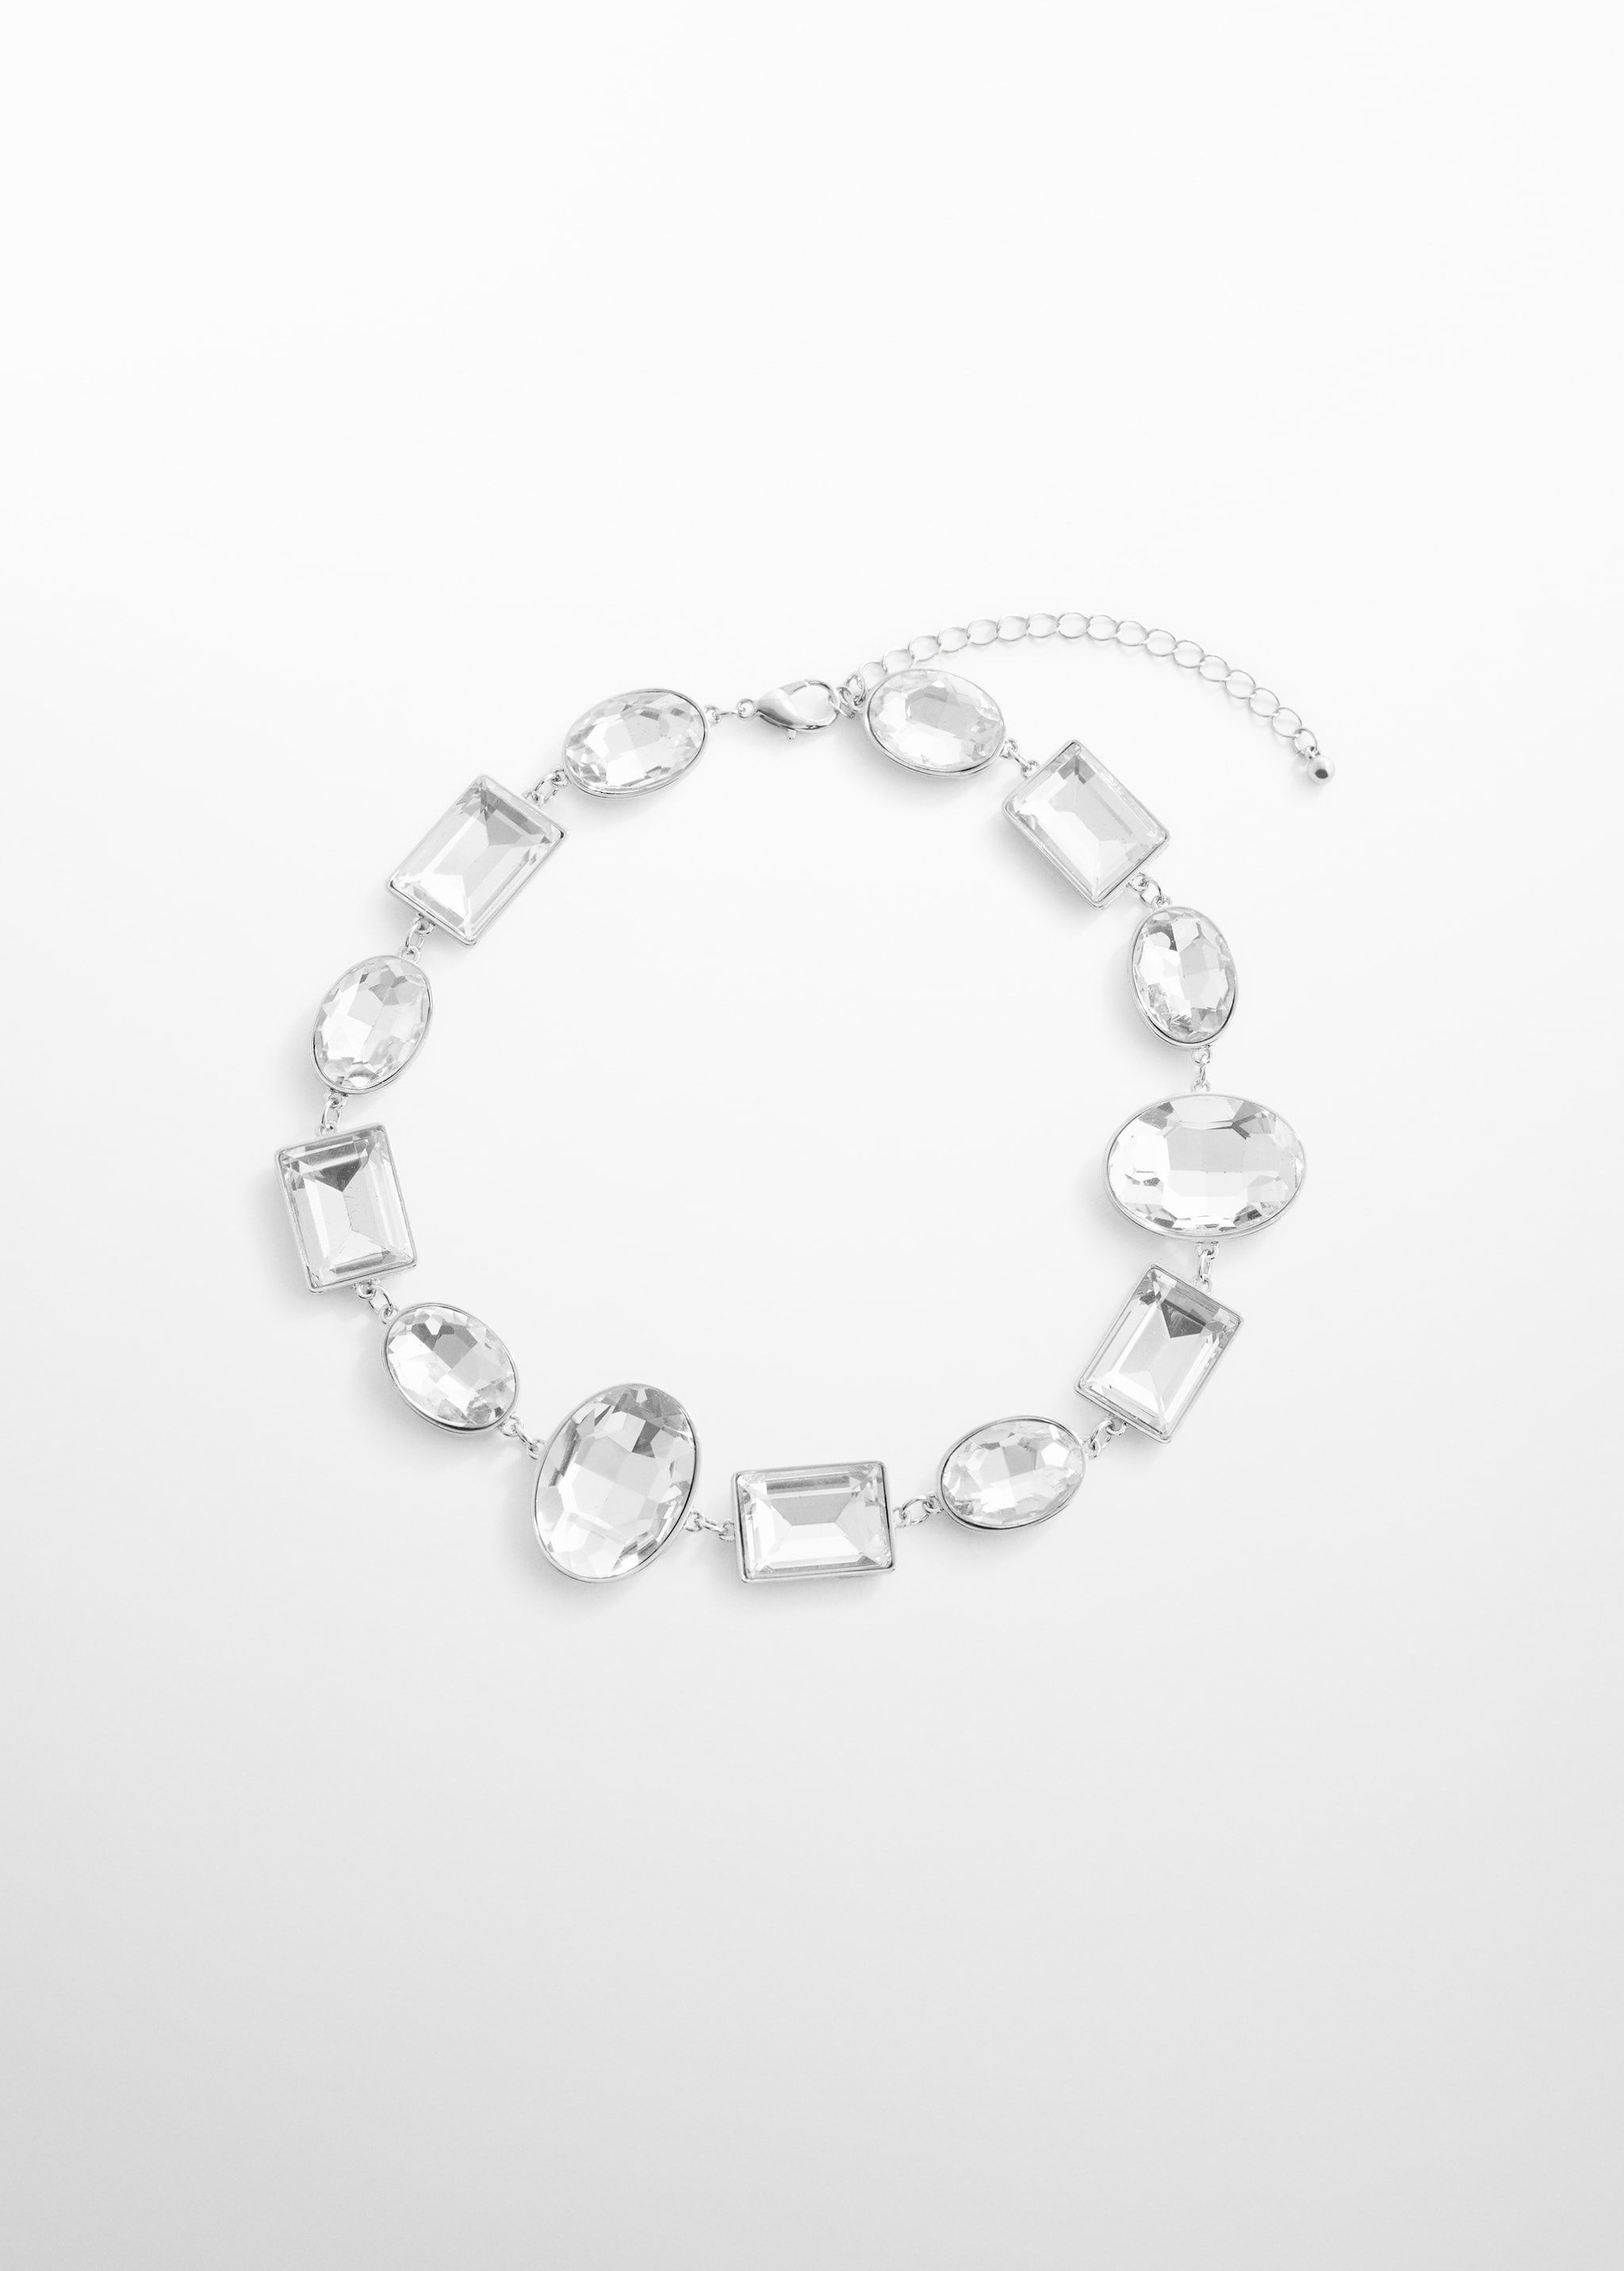 Ожерелье с ограненными кристаллами - Изделие без модели